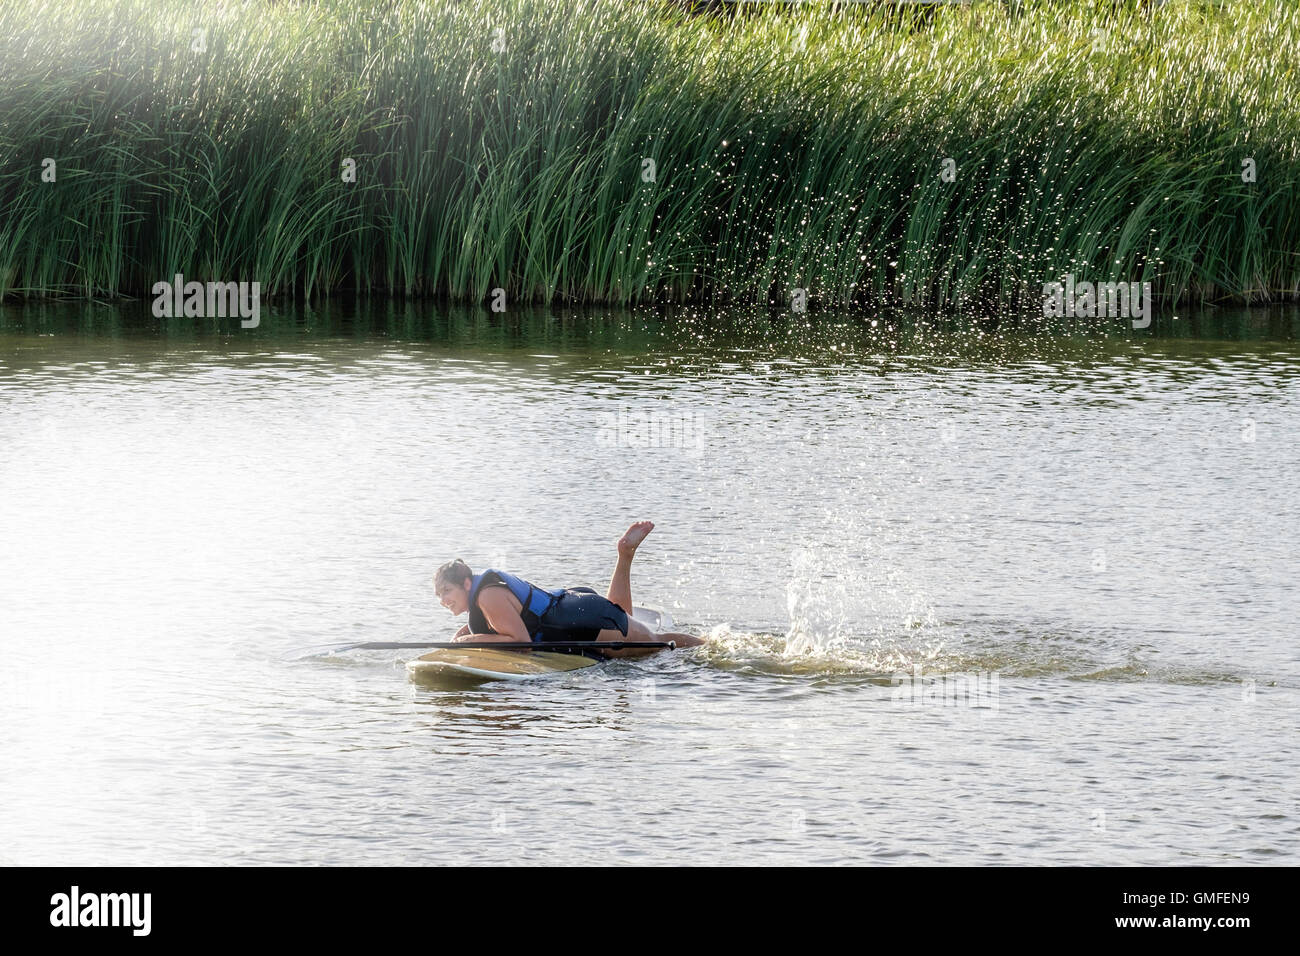 Une femme de race blanche dans son 30s'efforce de revenir sur son paddle board après tomber dans une rivière. New York, USA. Banque D'Images